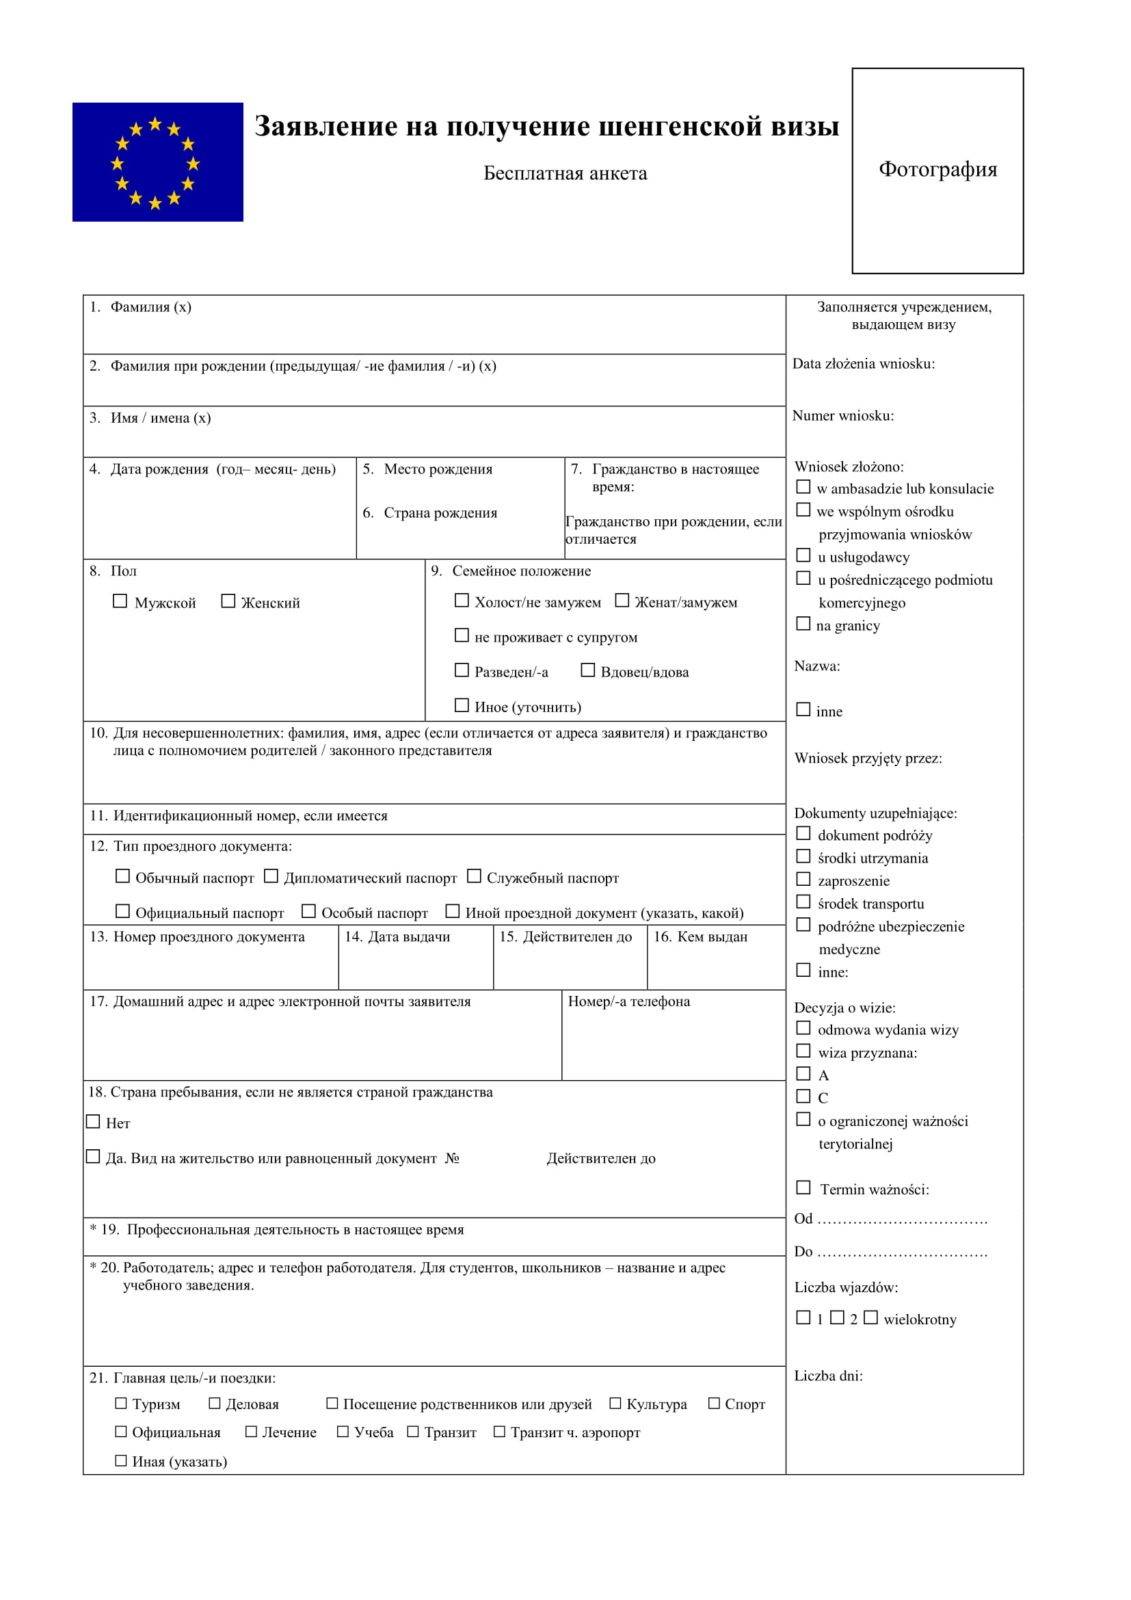 Анкета на визу в болгарию 2021 и образец